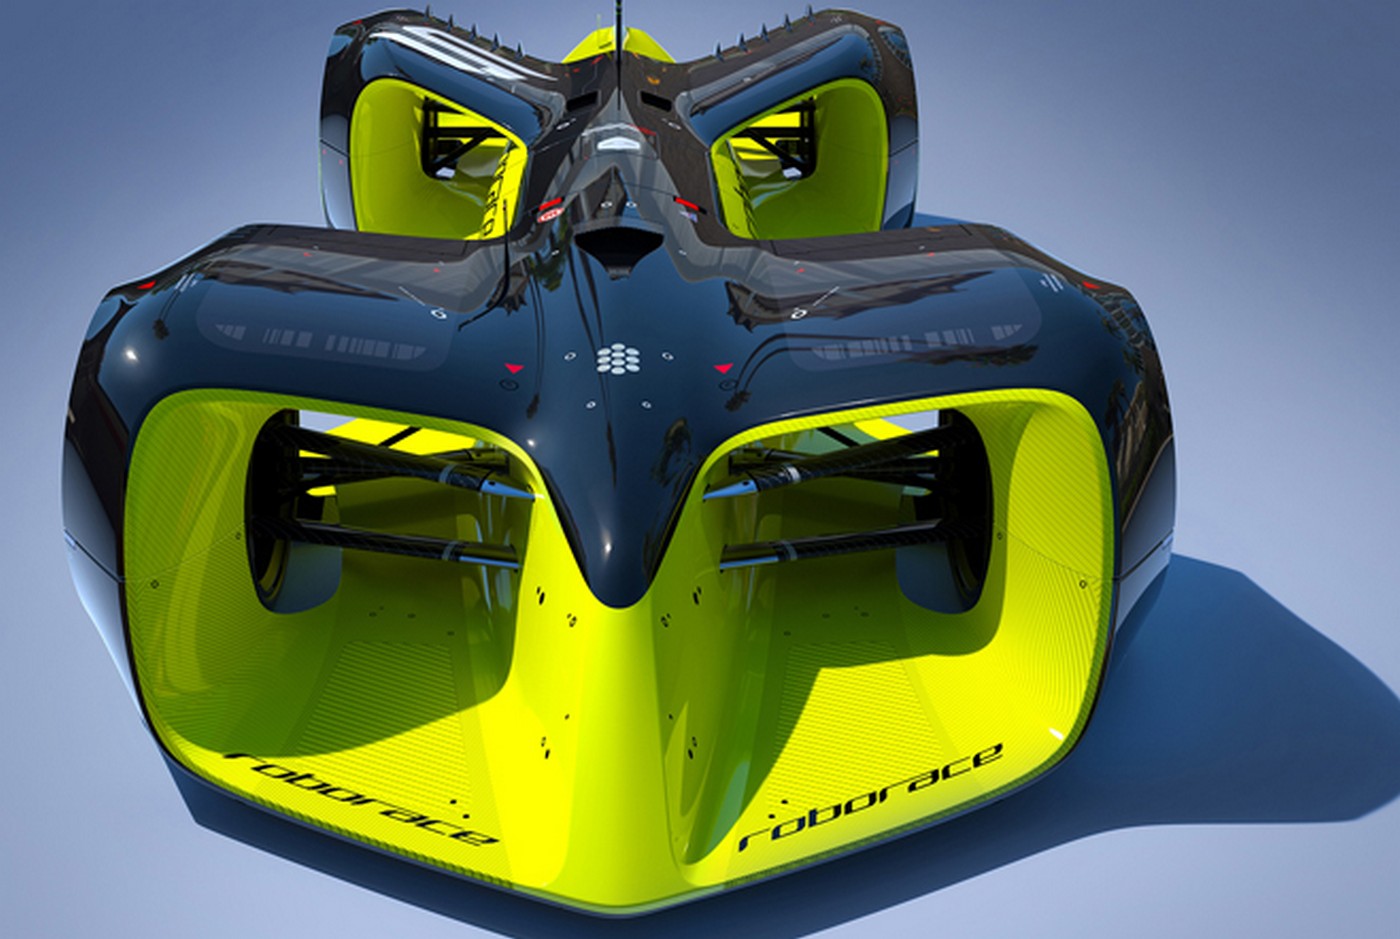 Voici à quoi ressembleront les voitures de course autonomes qui participeront à la Roborace. Si le design et le matériel sont identiques pour les dix équipes, celles-ci devront faire la différence sur leur travail au niveau des algorithmes de conduite. Une première démonstration doit avoir lieu durant la saison 2016/2017 du championnat de Formule E. © Roborace